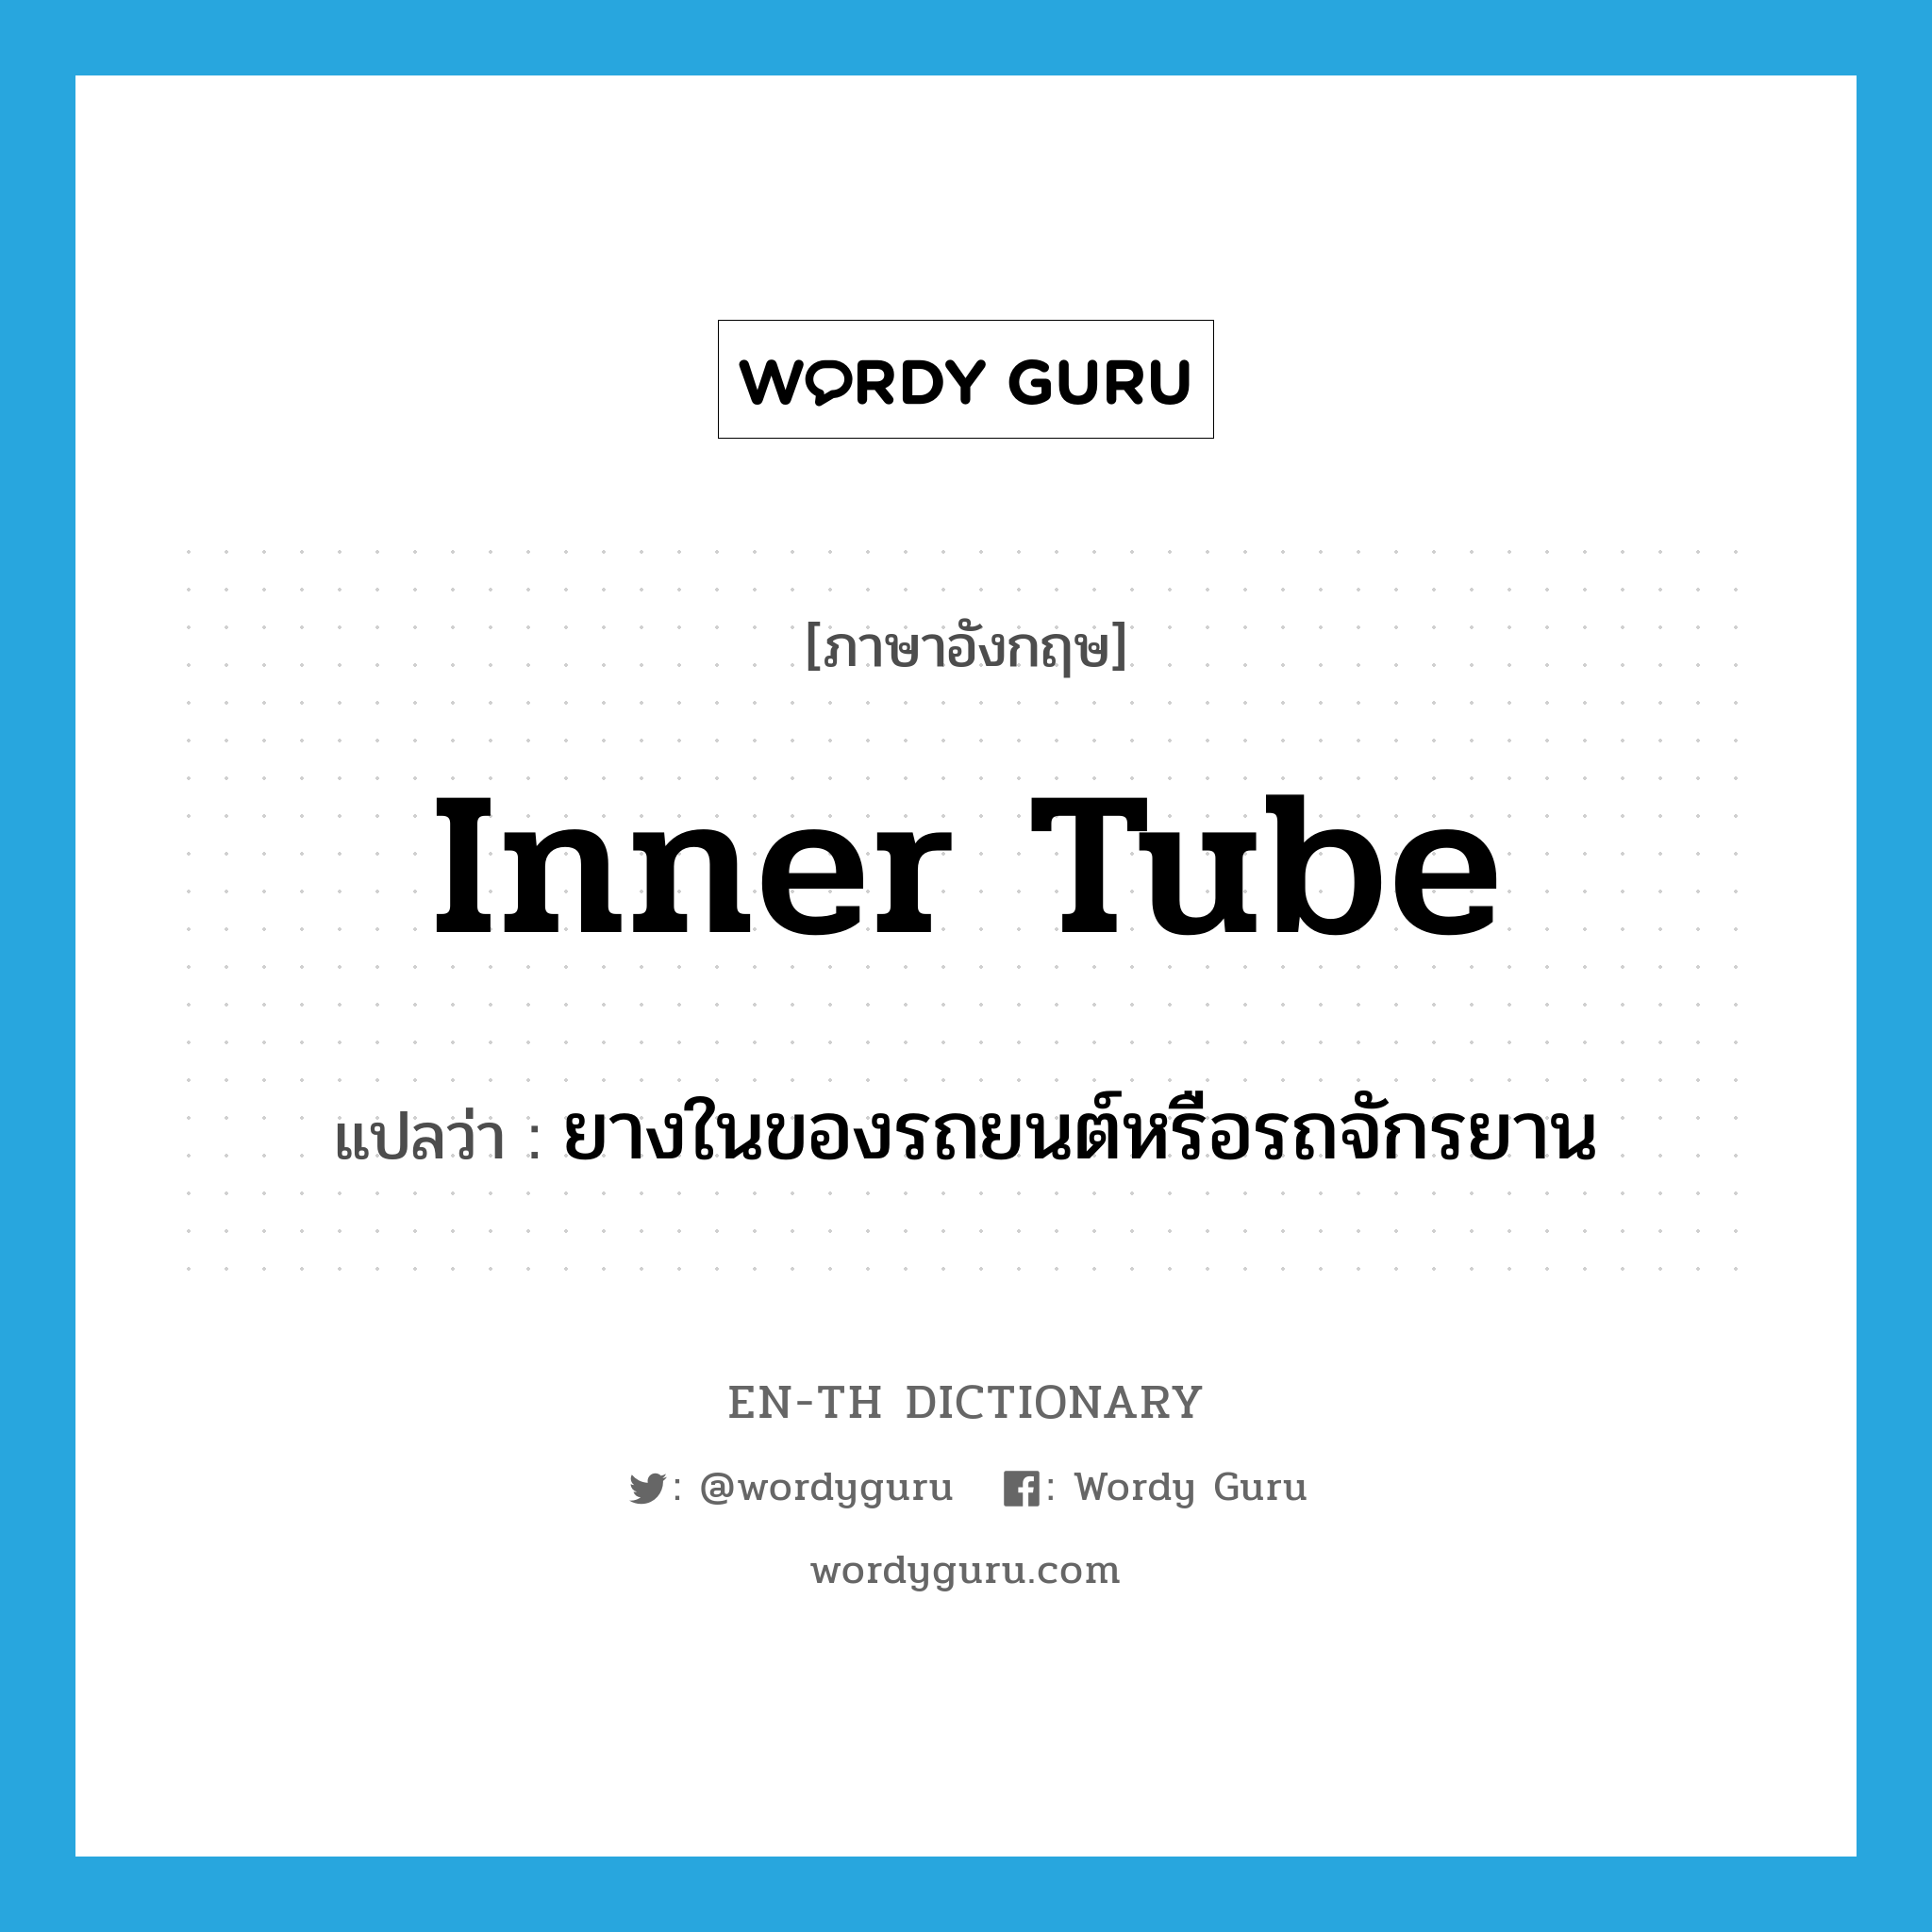 inner tube แปลว่า?, คำศัพท์ภาษาอังกฤษ inner tube แปลว่า ยางในของรถยนต์หรือรถจักรยาน ประเภท N หมวด N